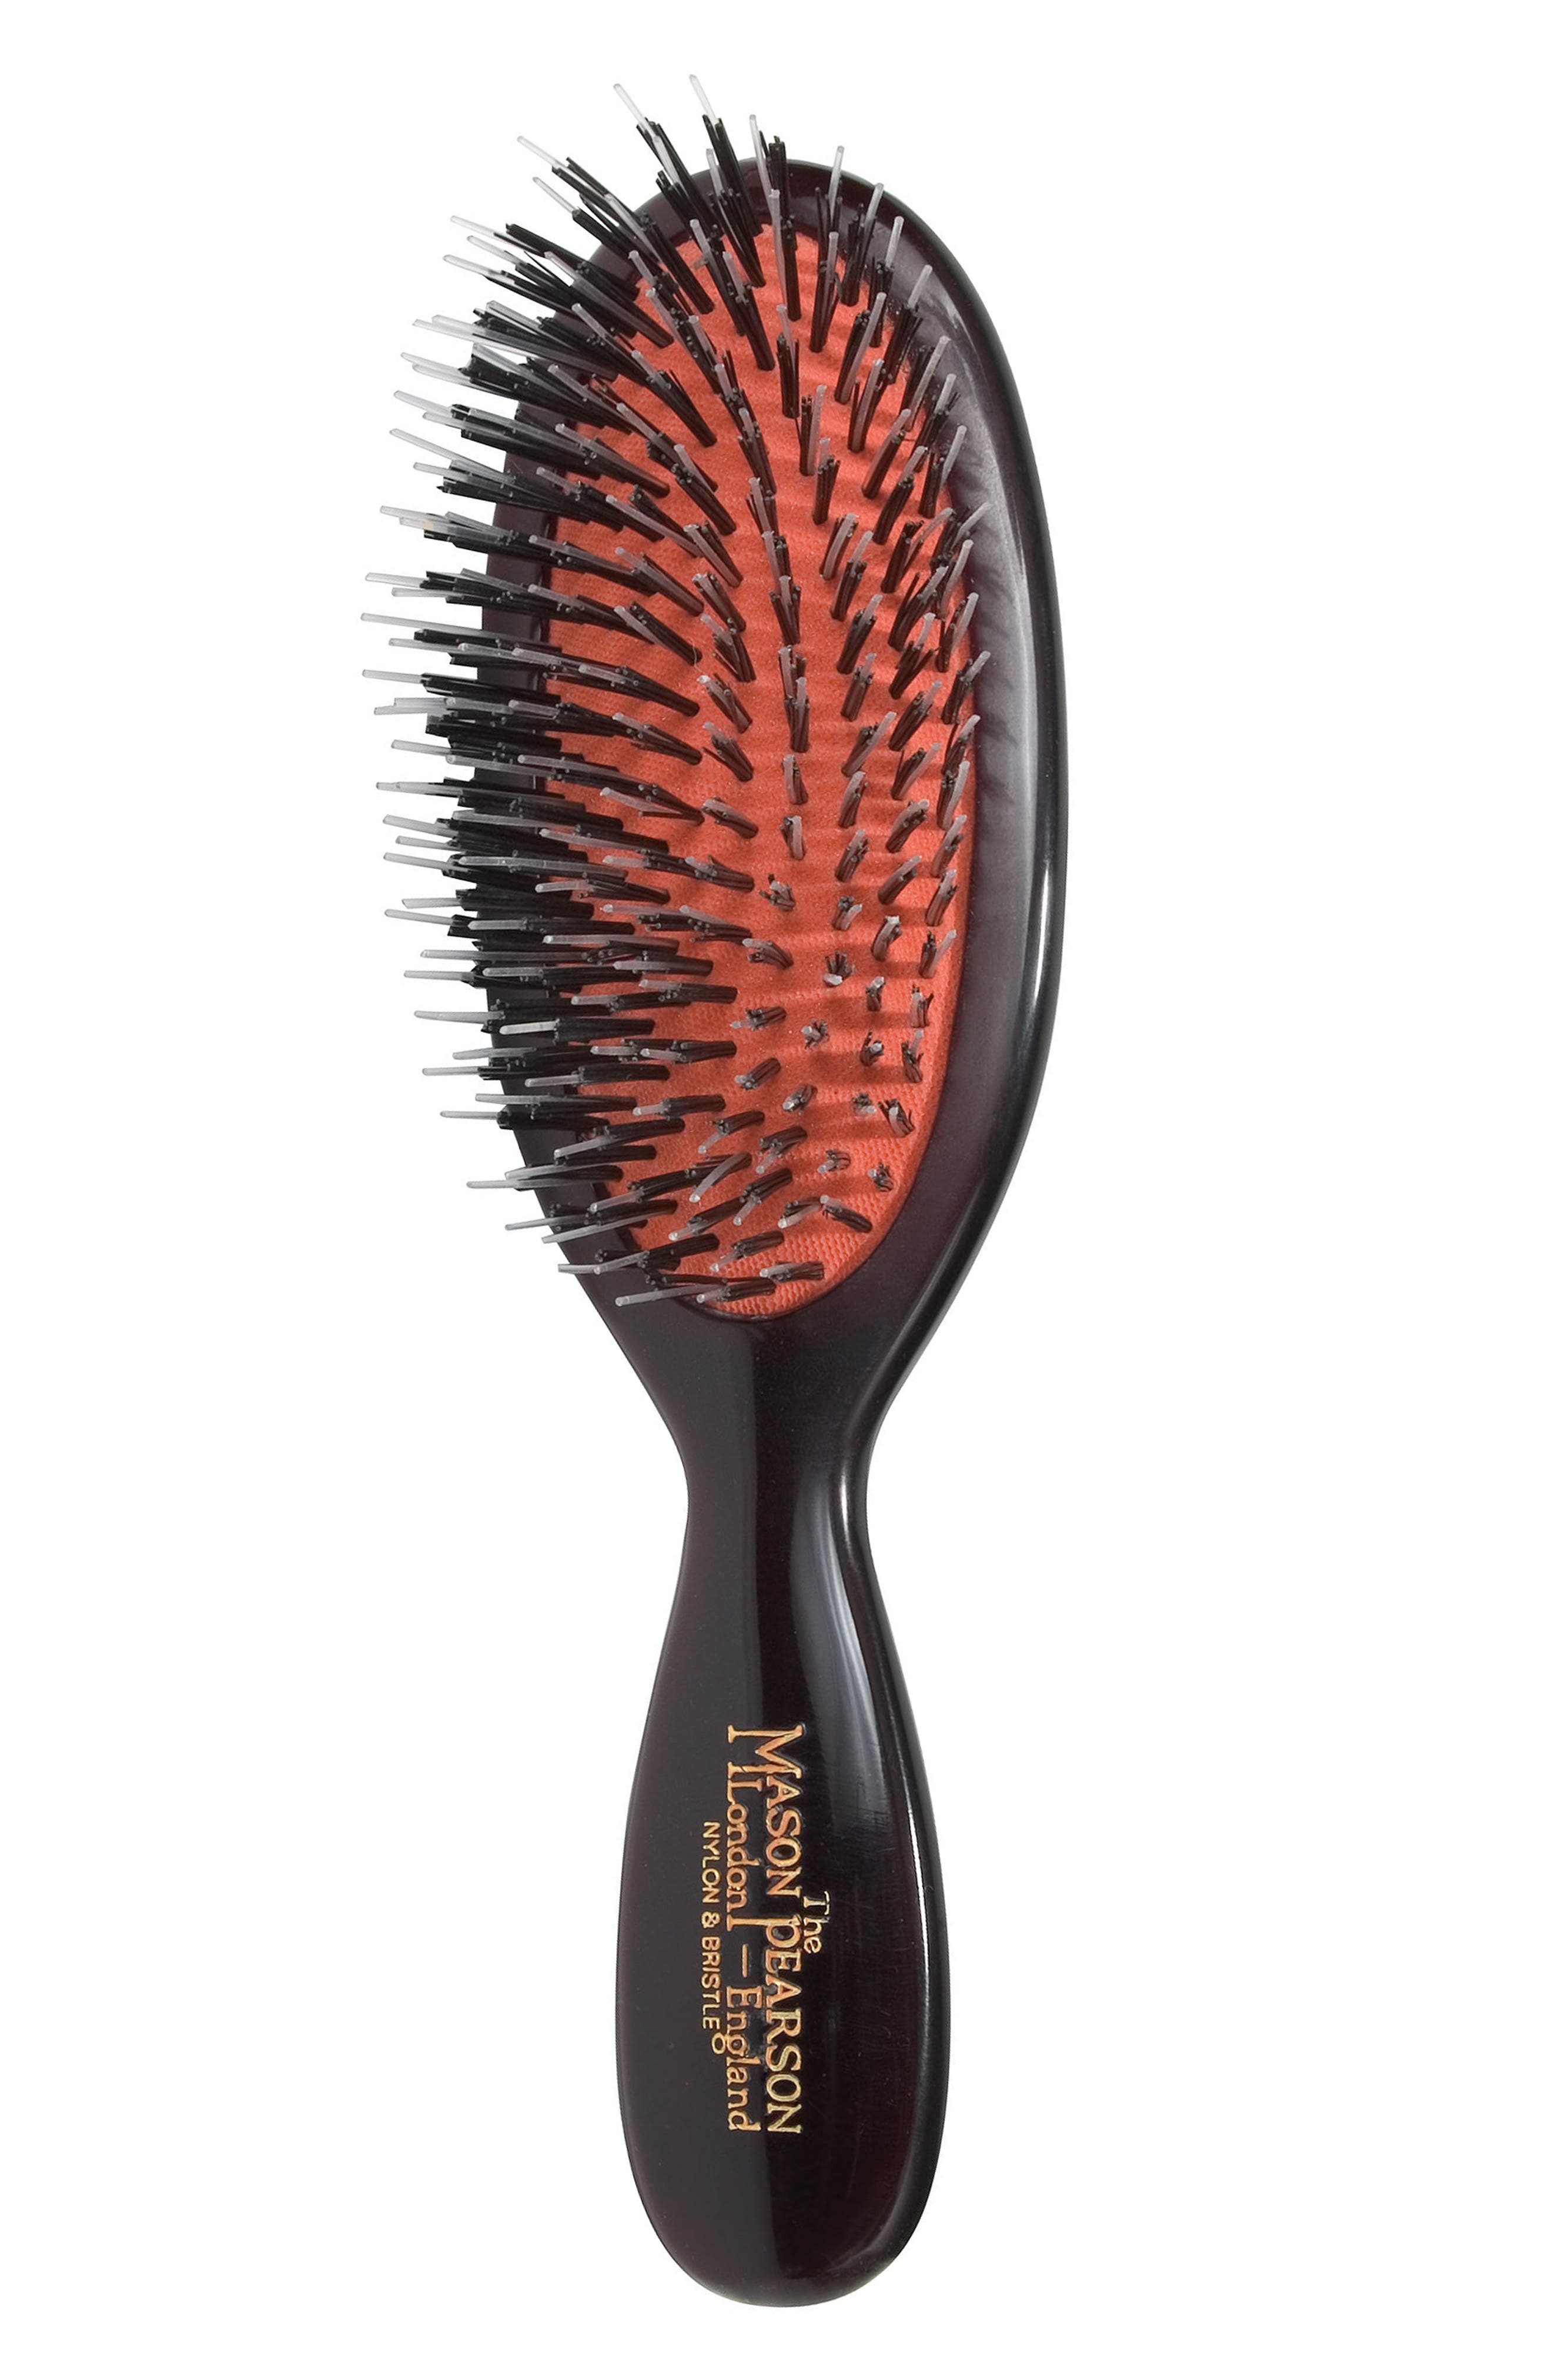 coarse hair brush